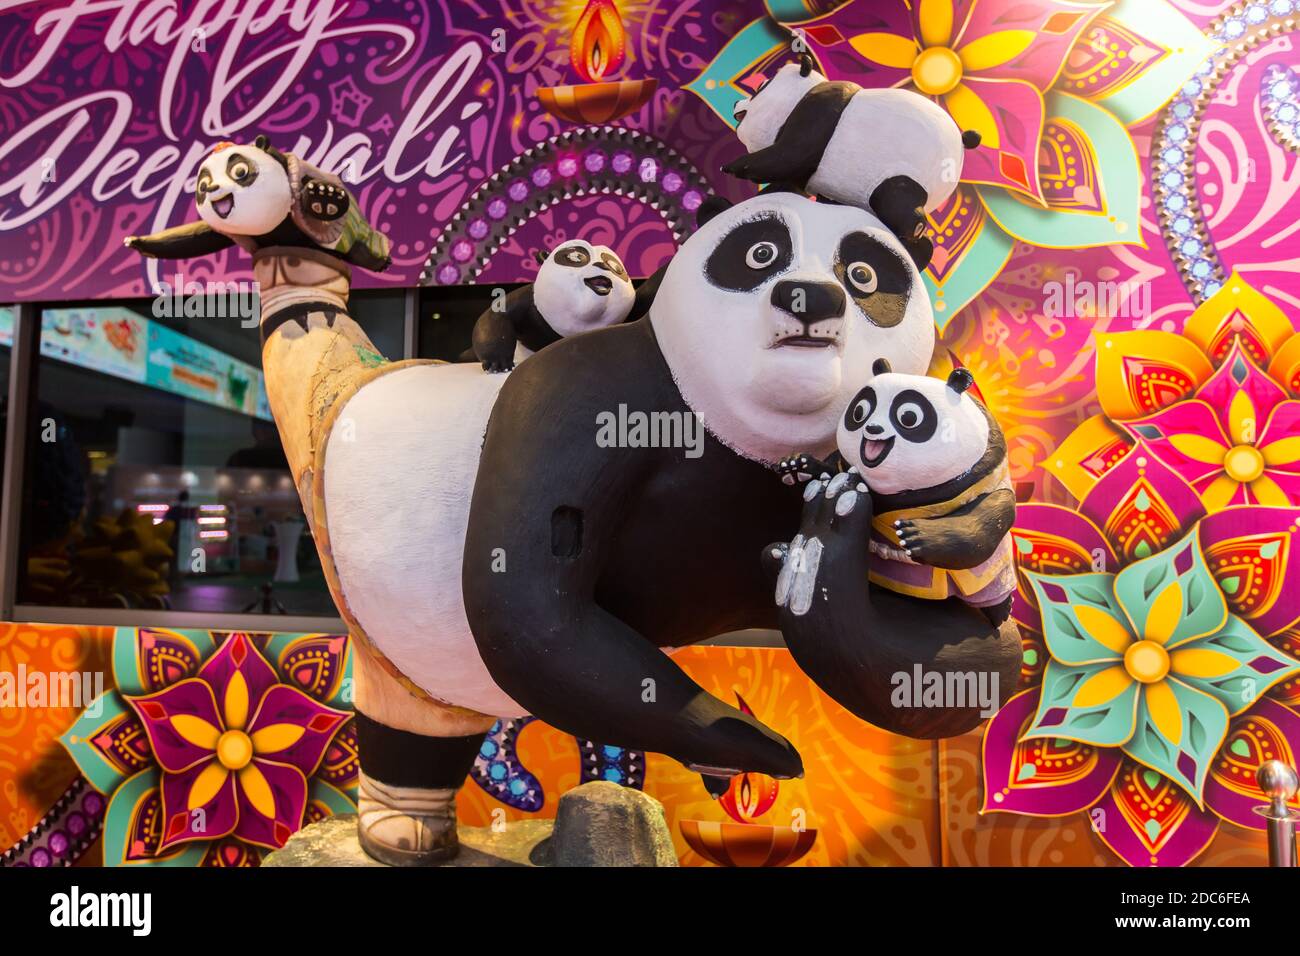 Kung Fu Panda life-size statues. Stock Photo